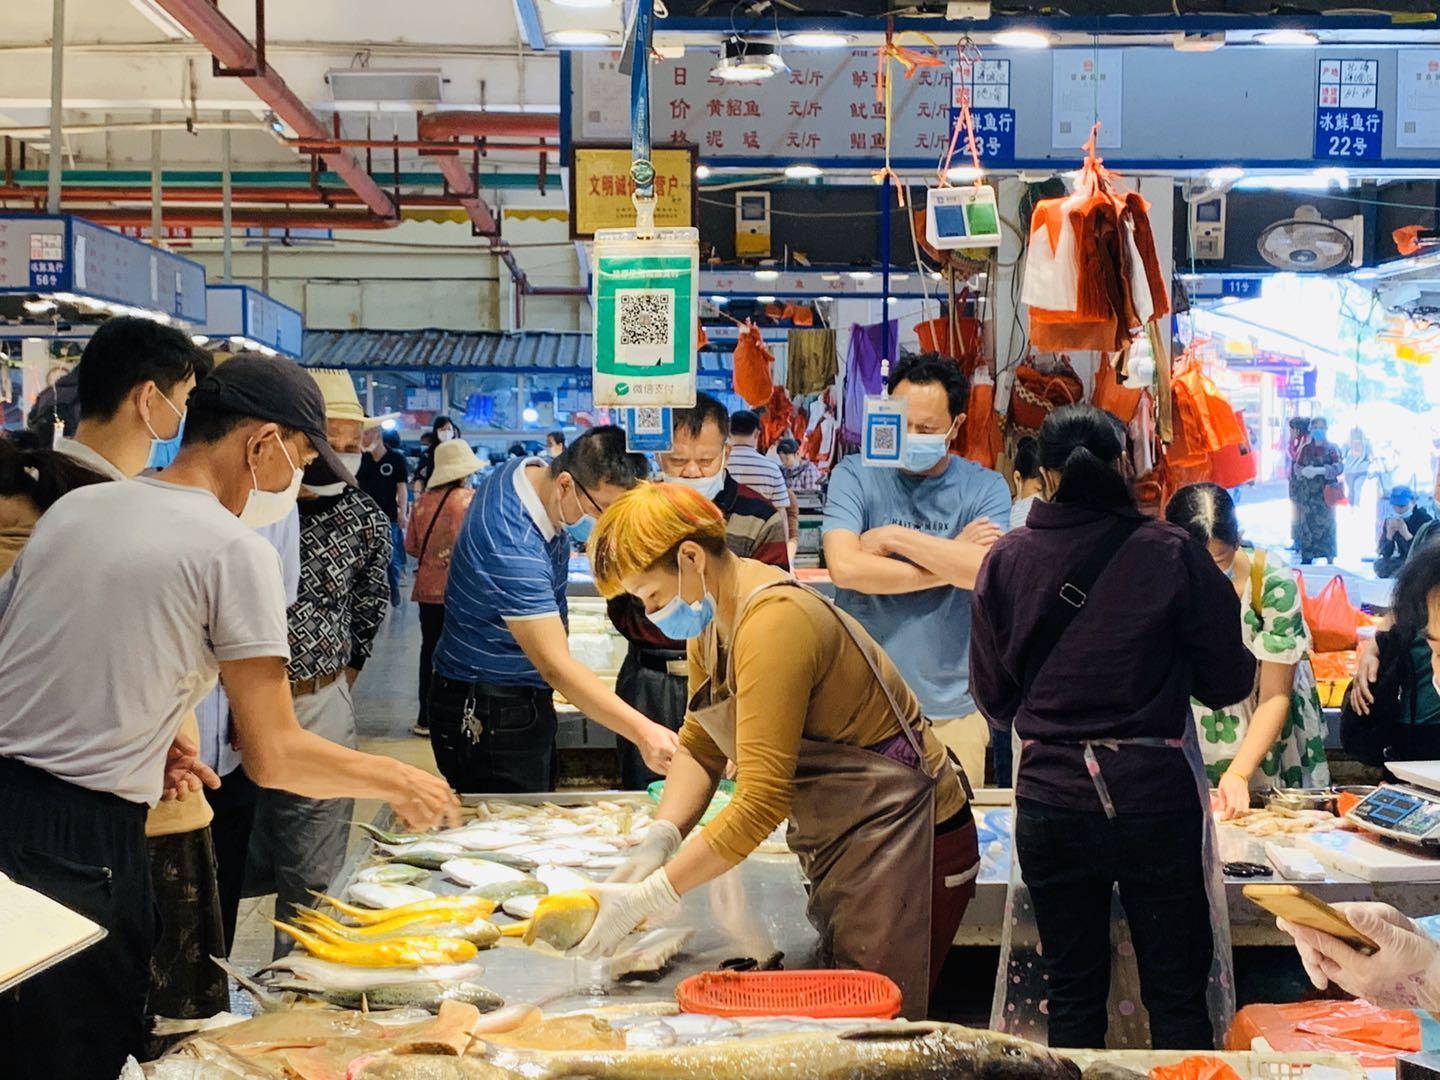 即将休渔,南珠市场部分海鲜略涨价,弹虾要75元一斤!